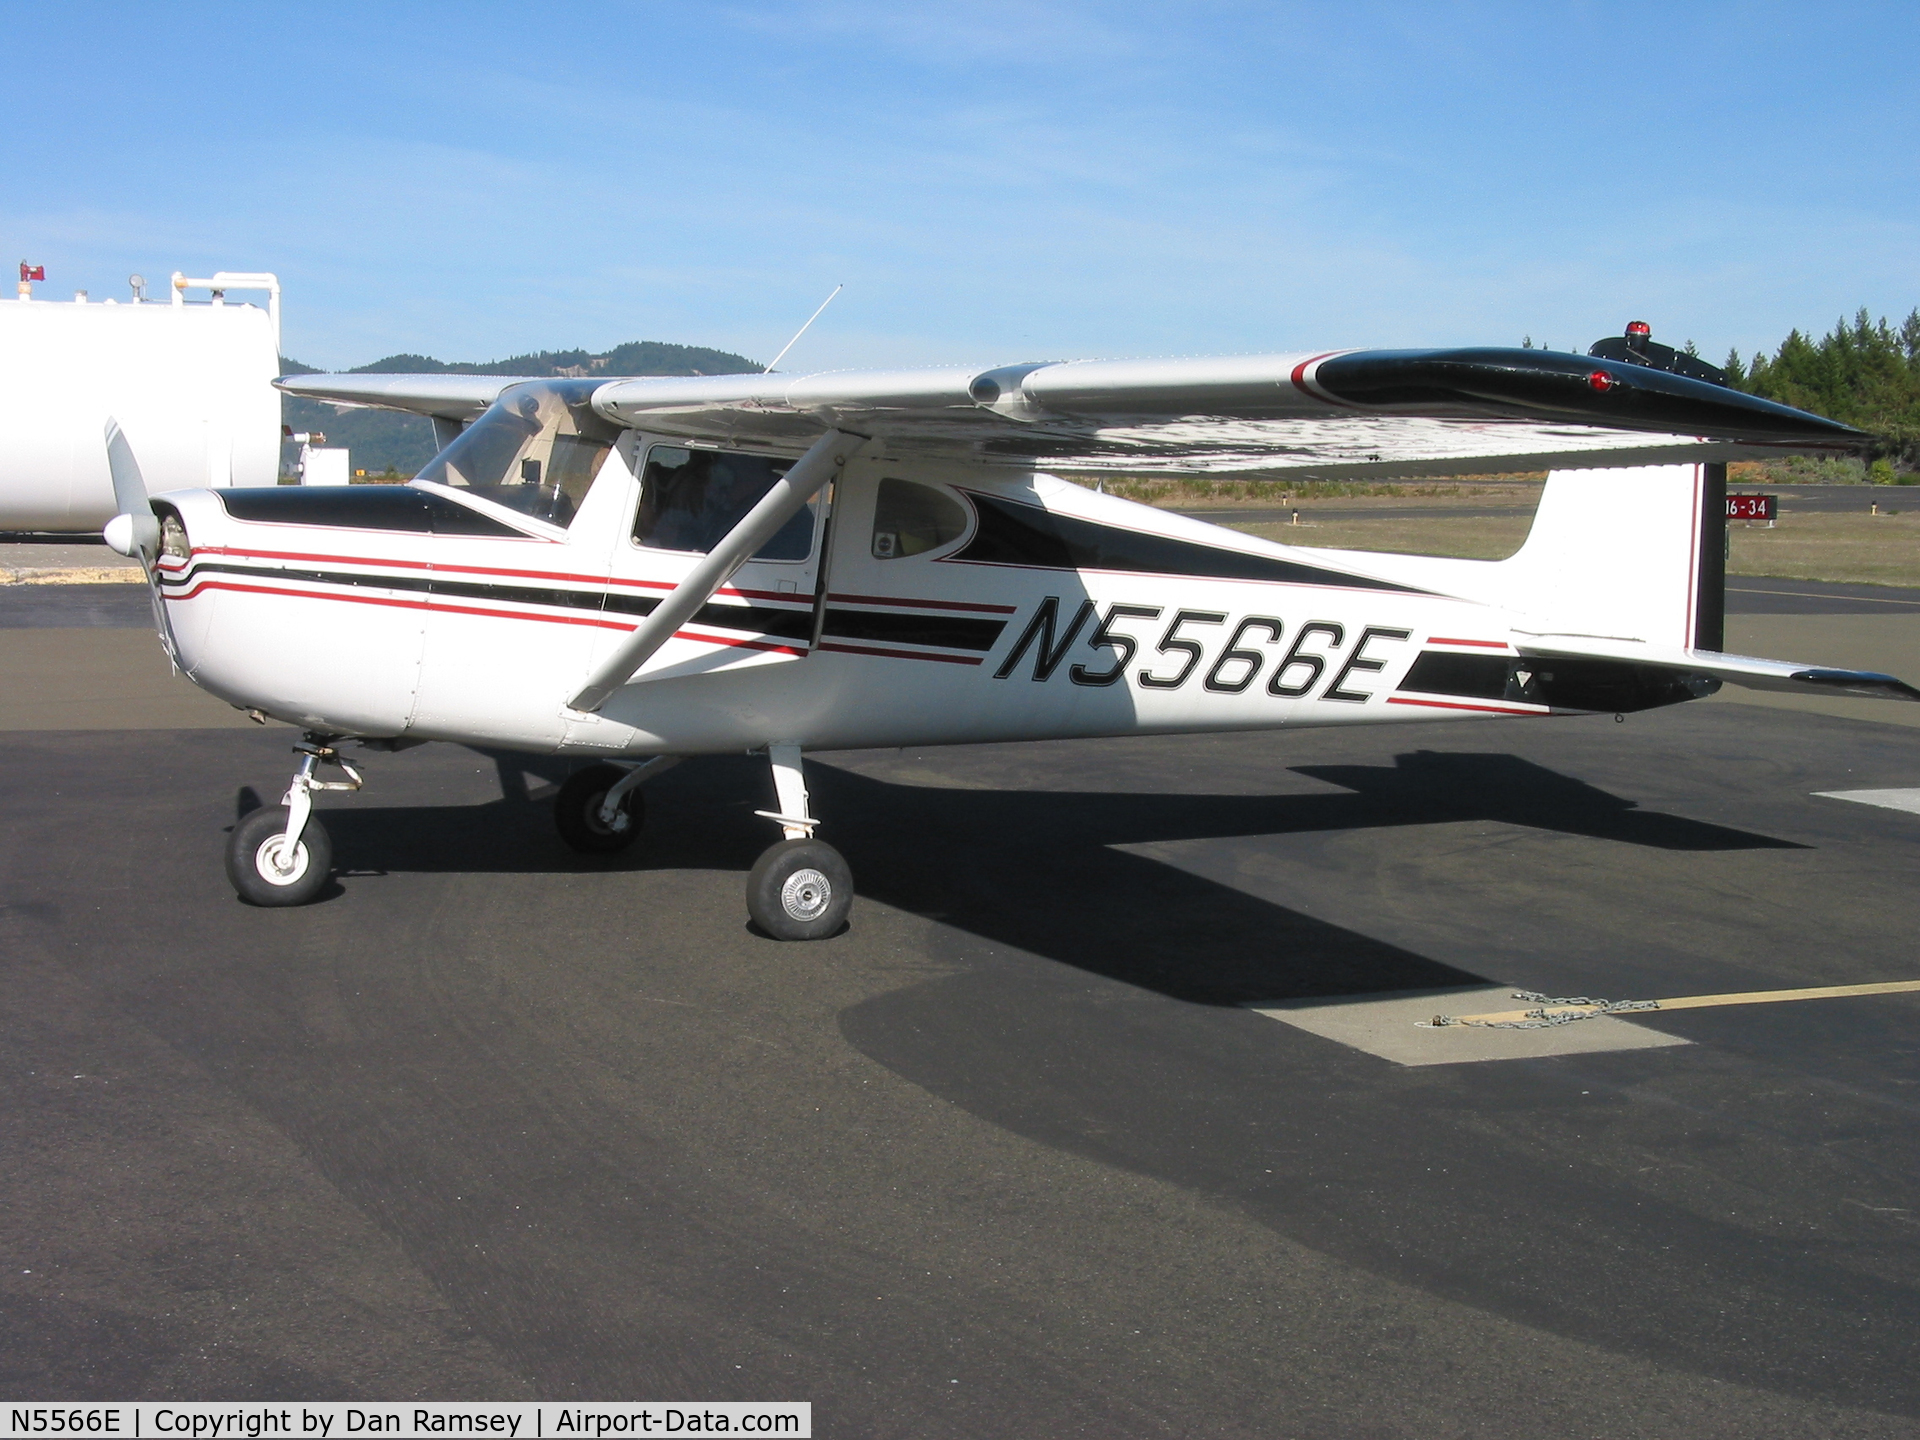 N5566E, 1958 Cessna 150 C/N 17066, The 66th Cessna 150 manufactured.